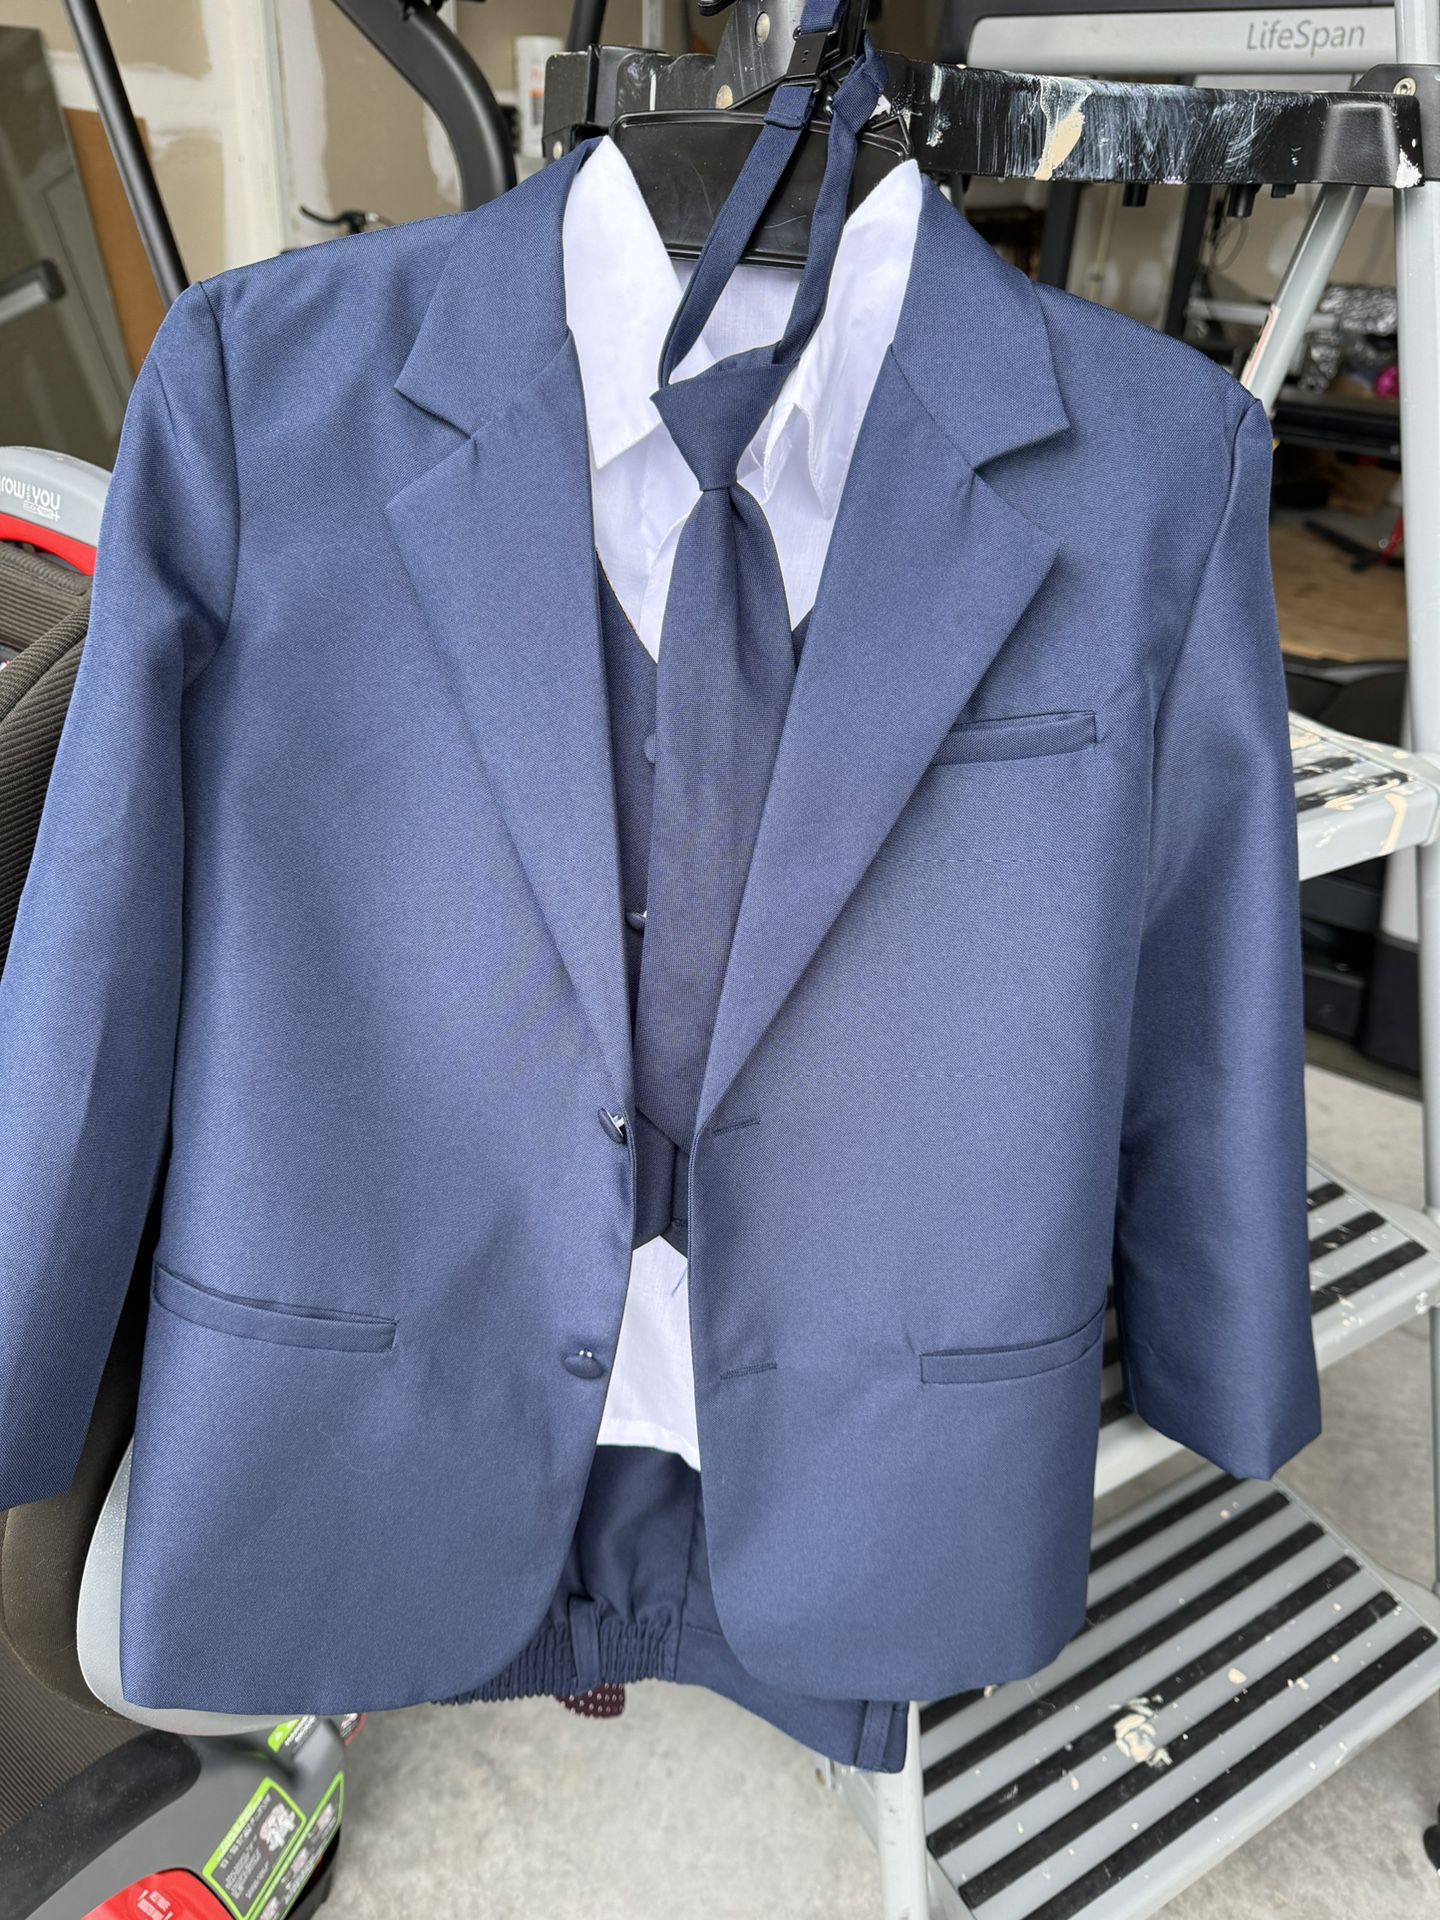 Boy’s Blue 5-Piece Suit Size 7